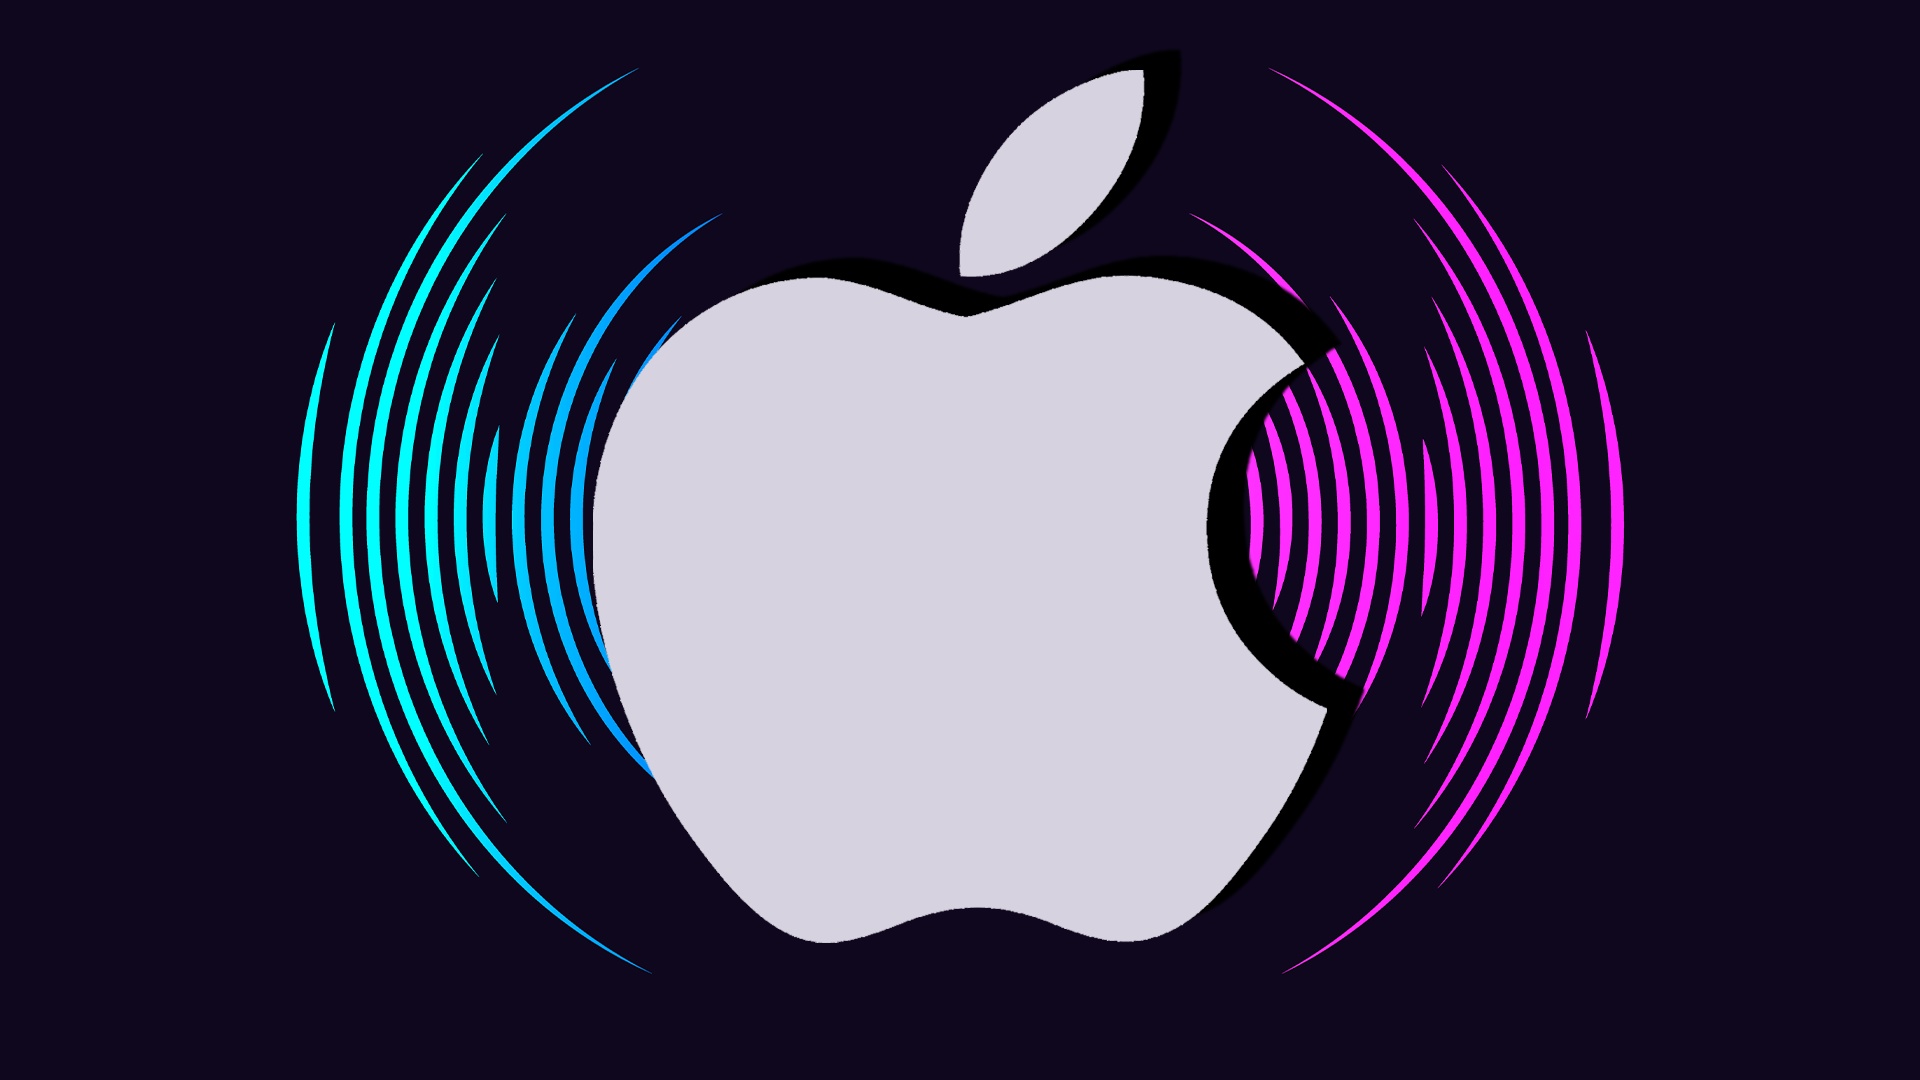 #Mehr Dolby Atmos: Apple pusht 3D-Audio und möchte Musiker besser bezahlen